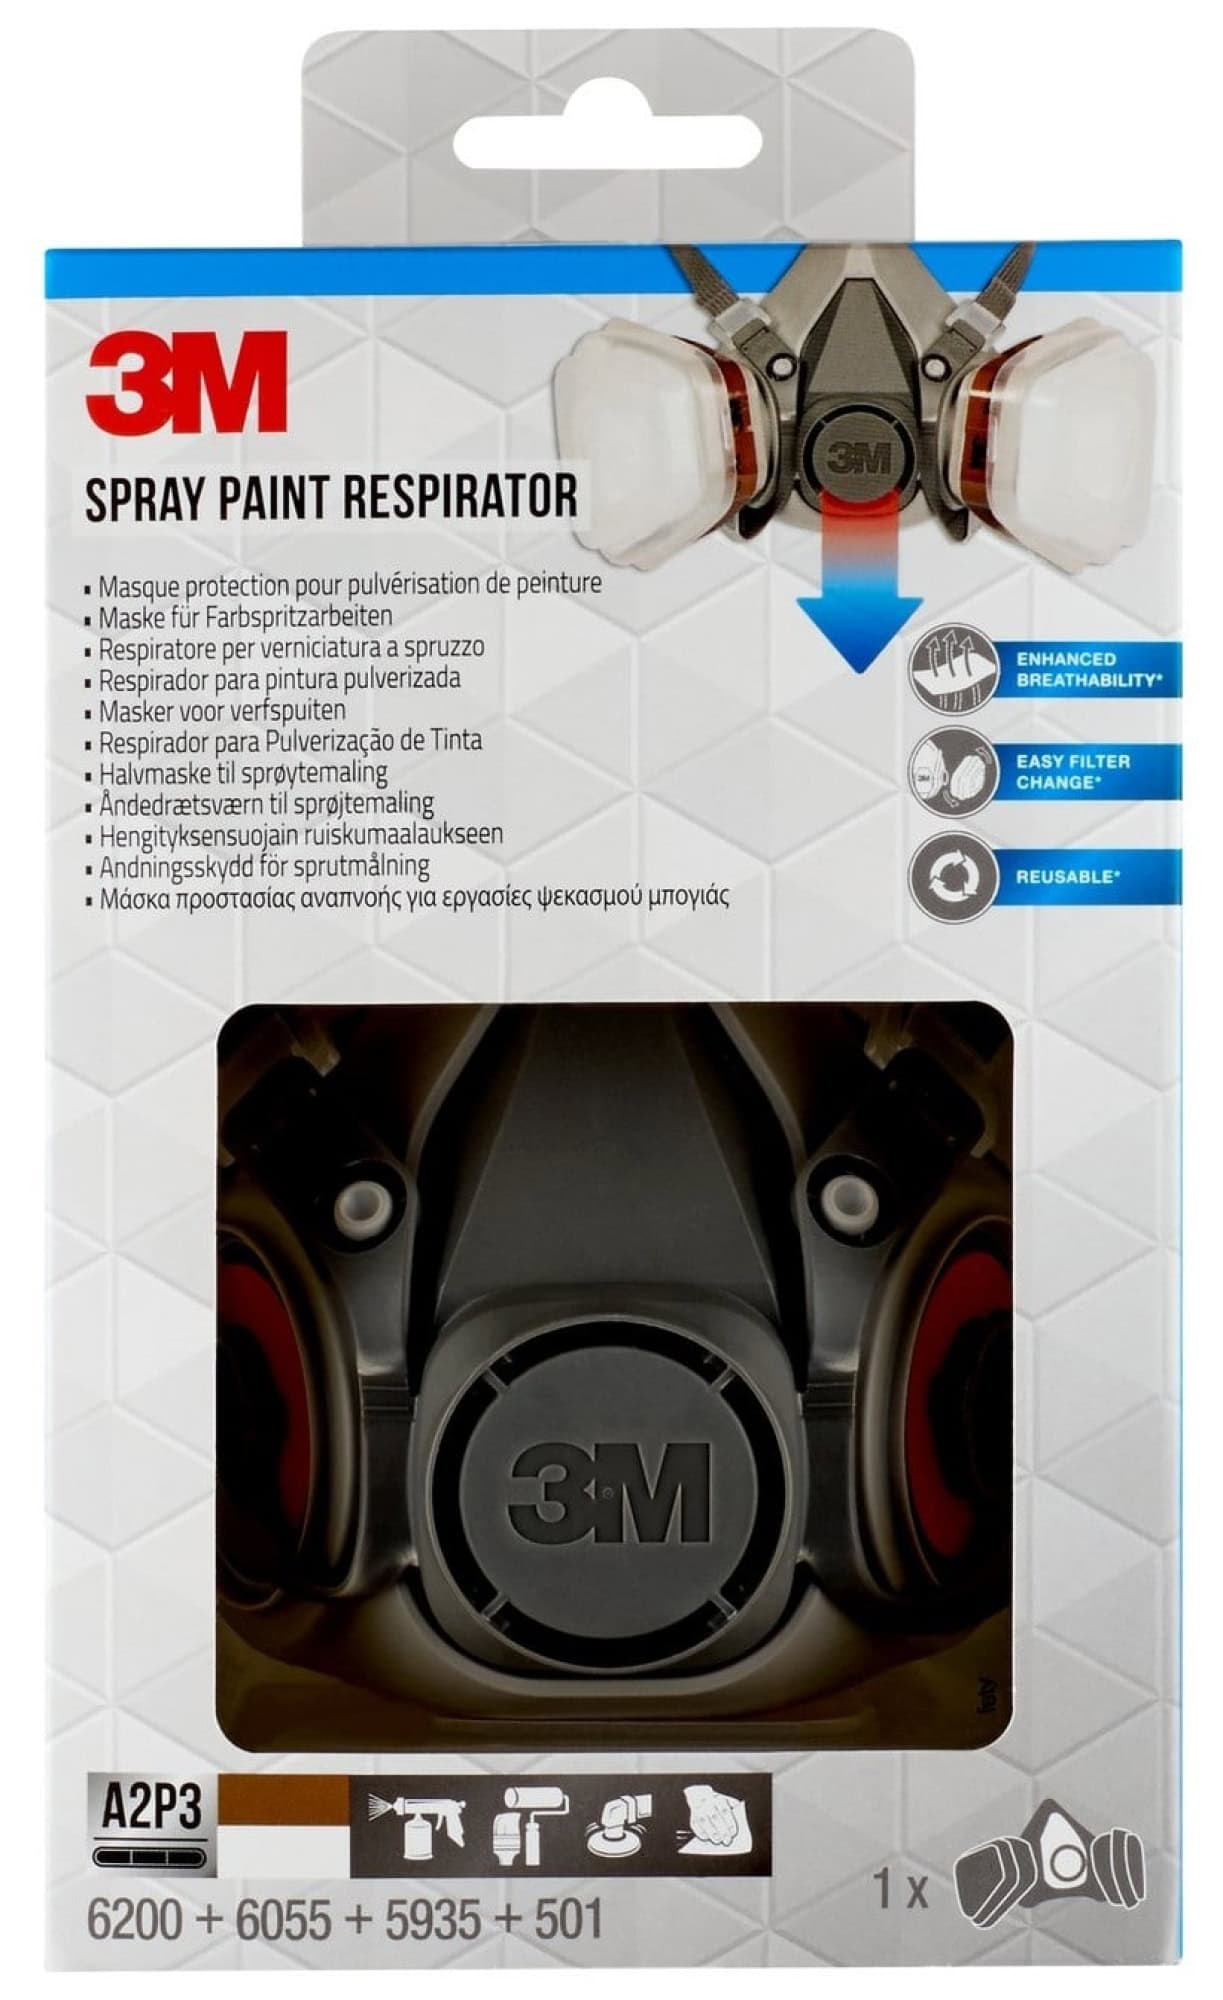 3M™ Respirador para pintura pulverizada 6002, A2P2, 1 kit